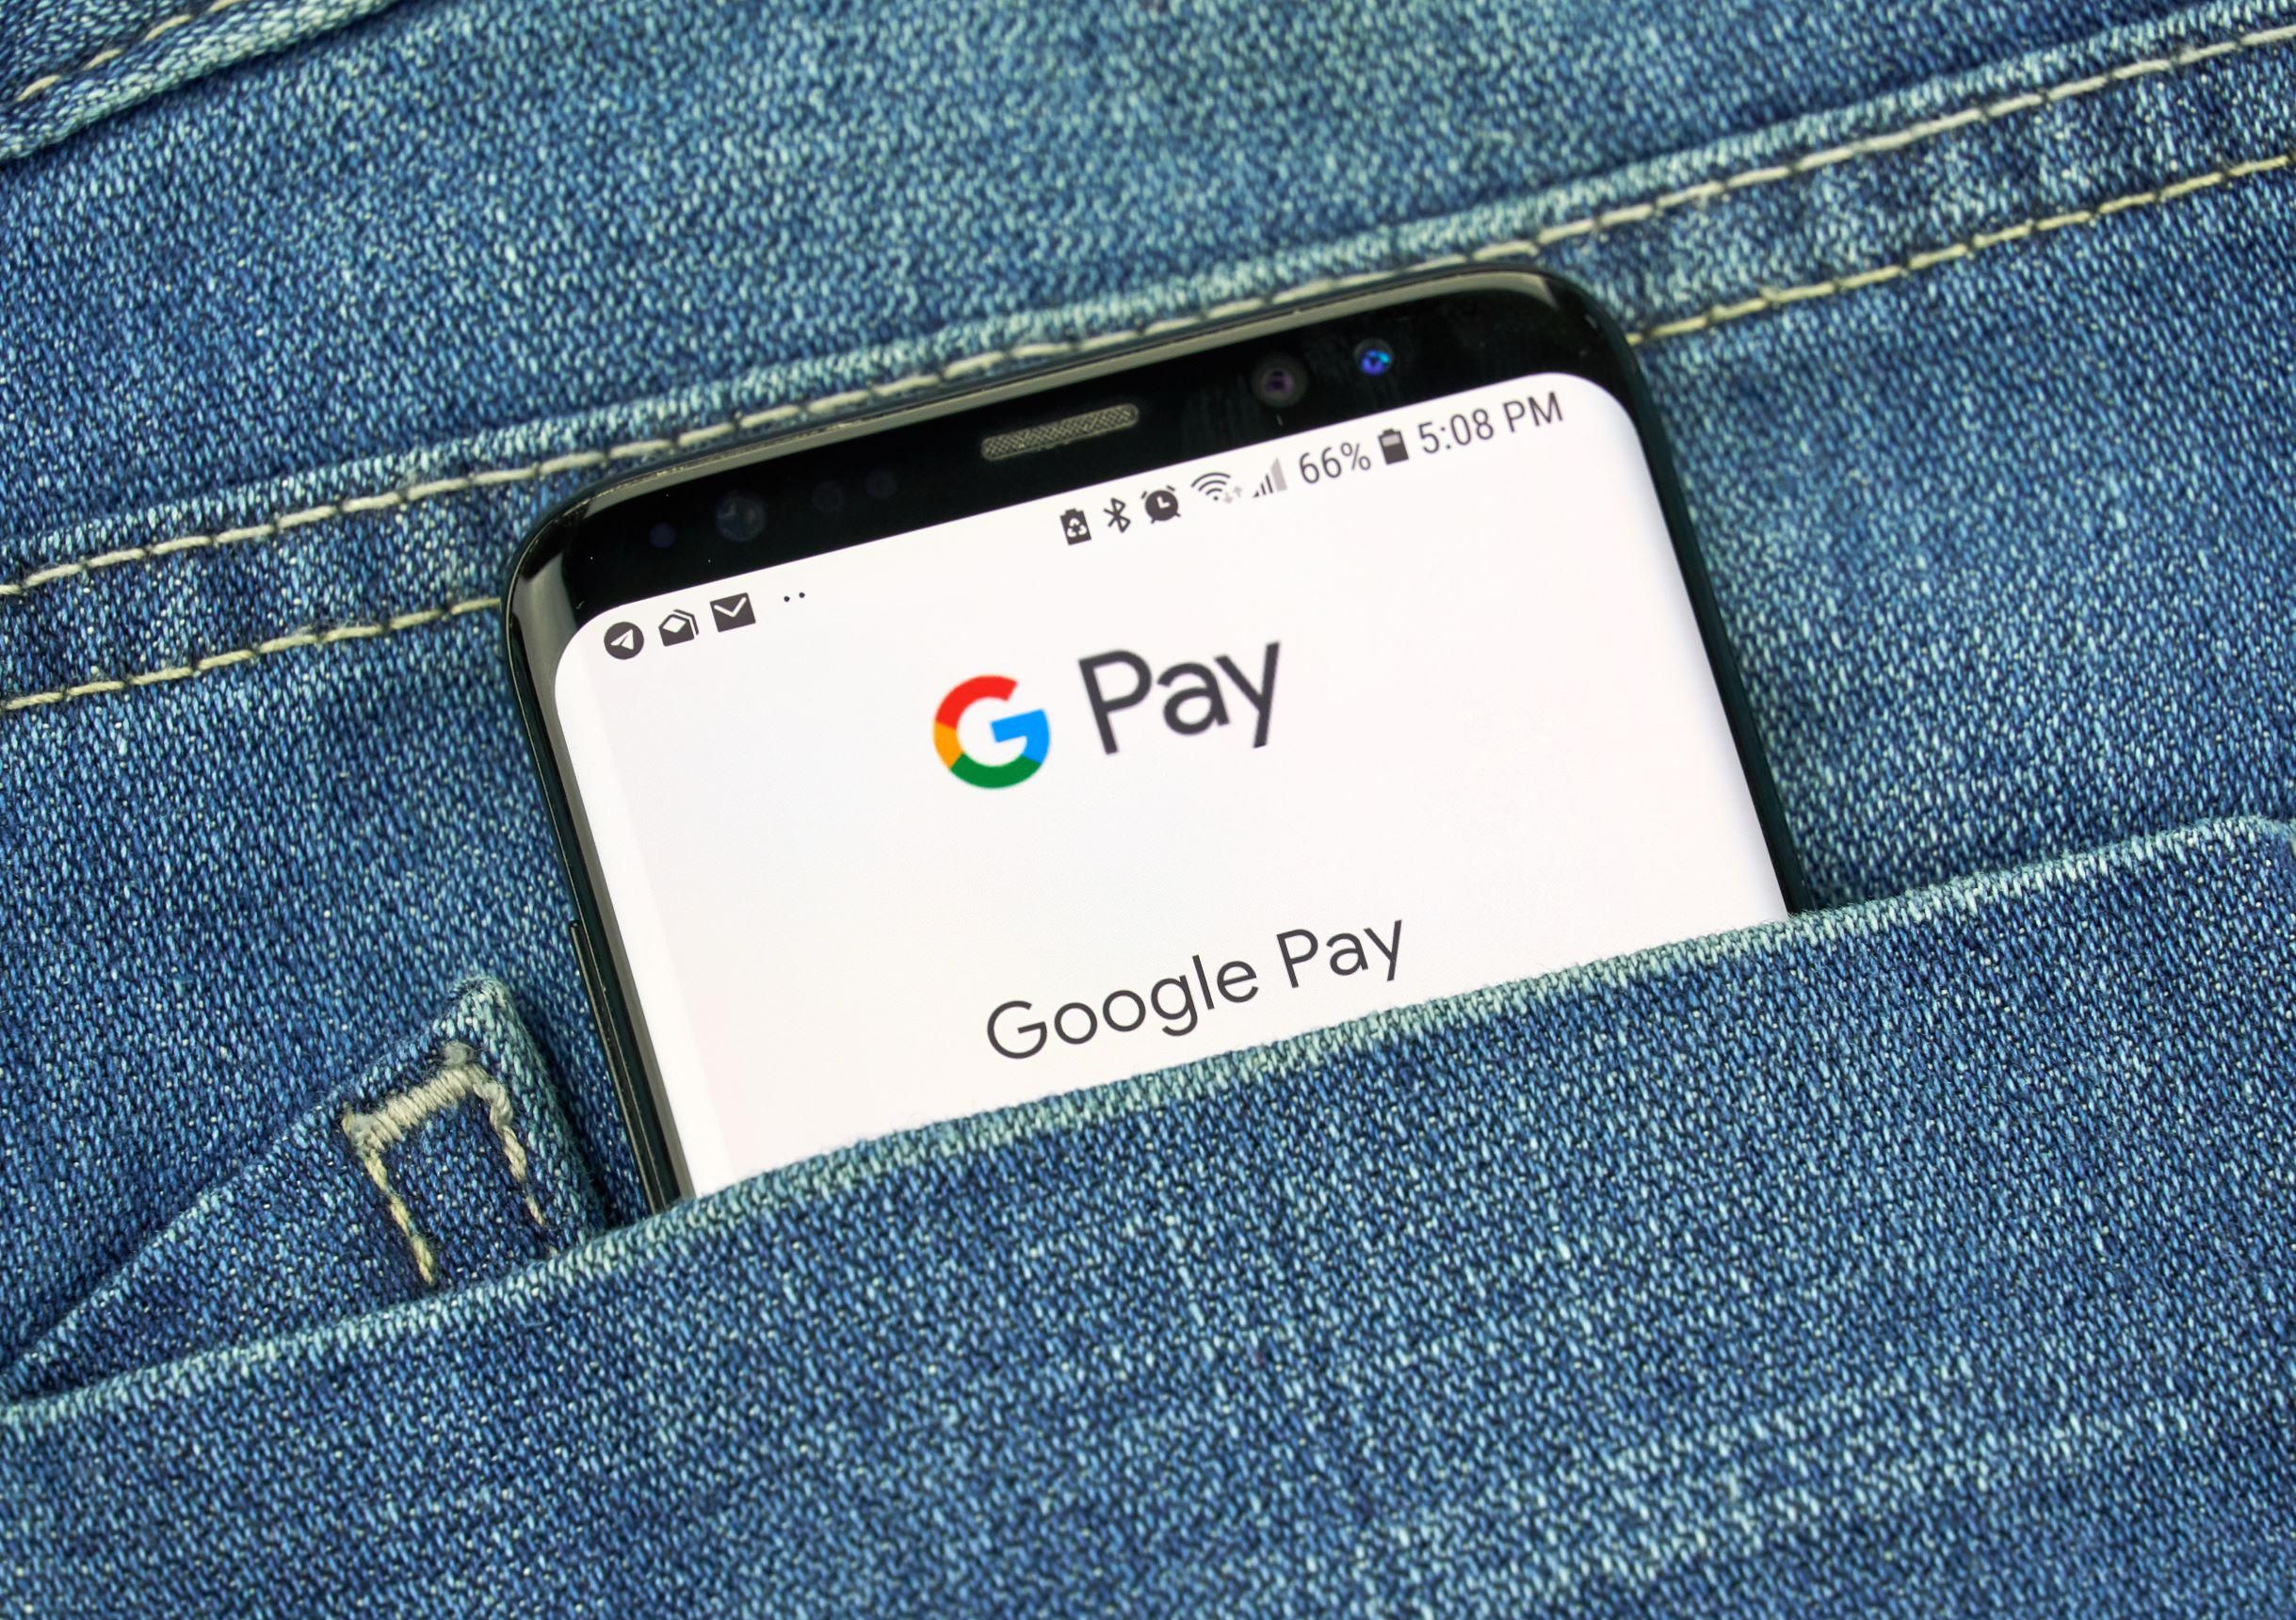 Mától használható az androidos mobilfizetés, a Google Pay